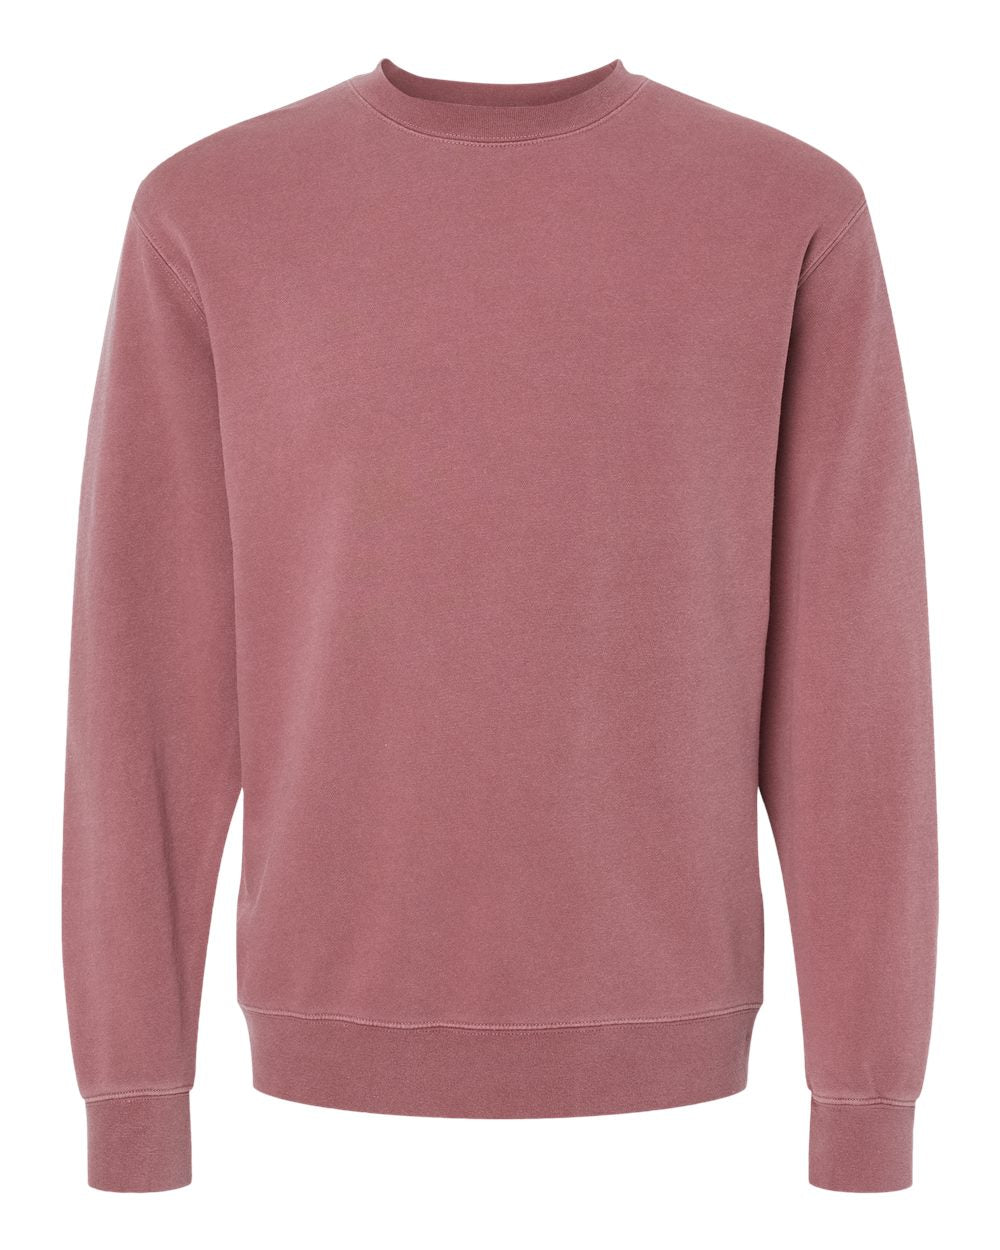 Independent Pigment-Dyed Crewneck Sweatshirt (PRM3500) in Pigment Maroon